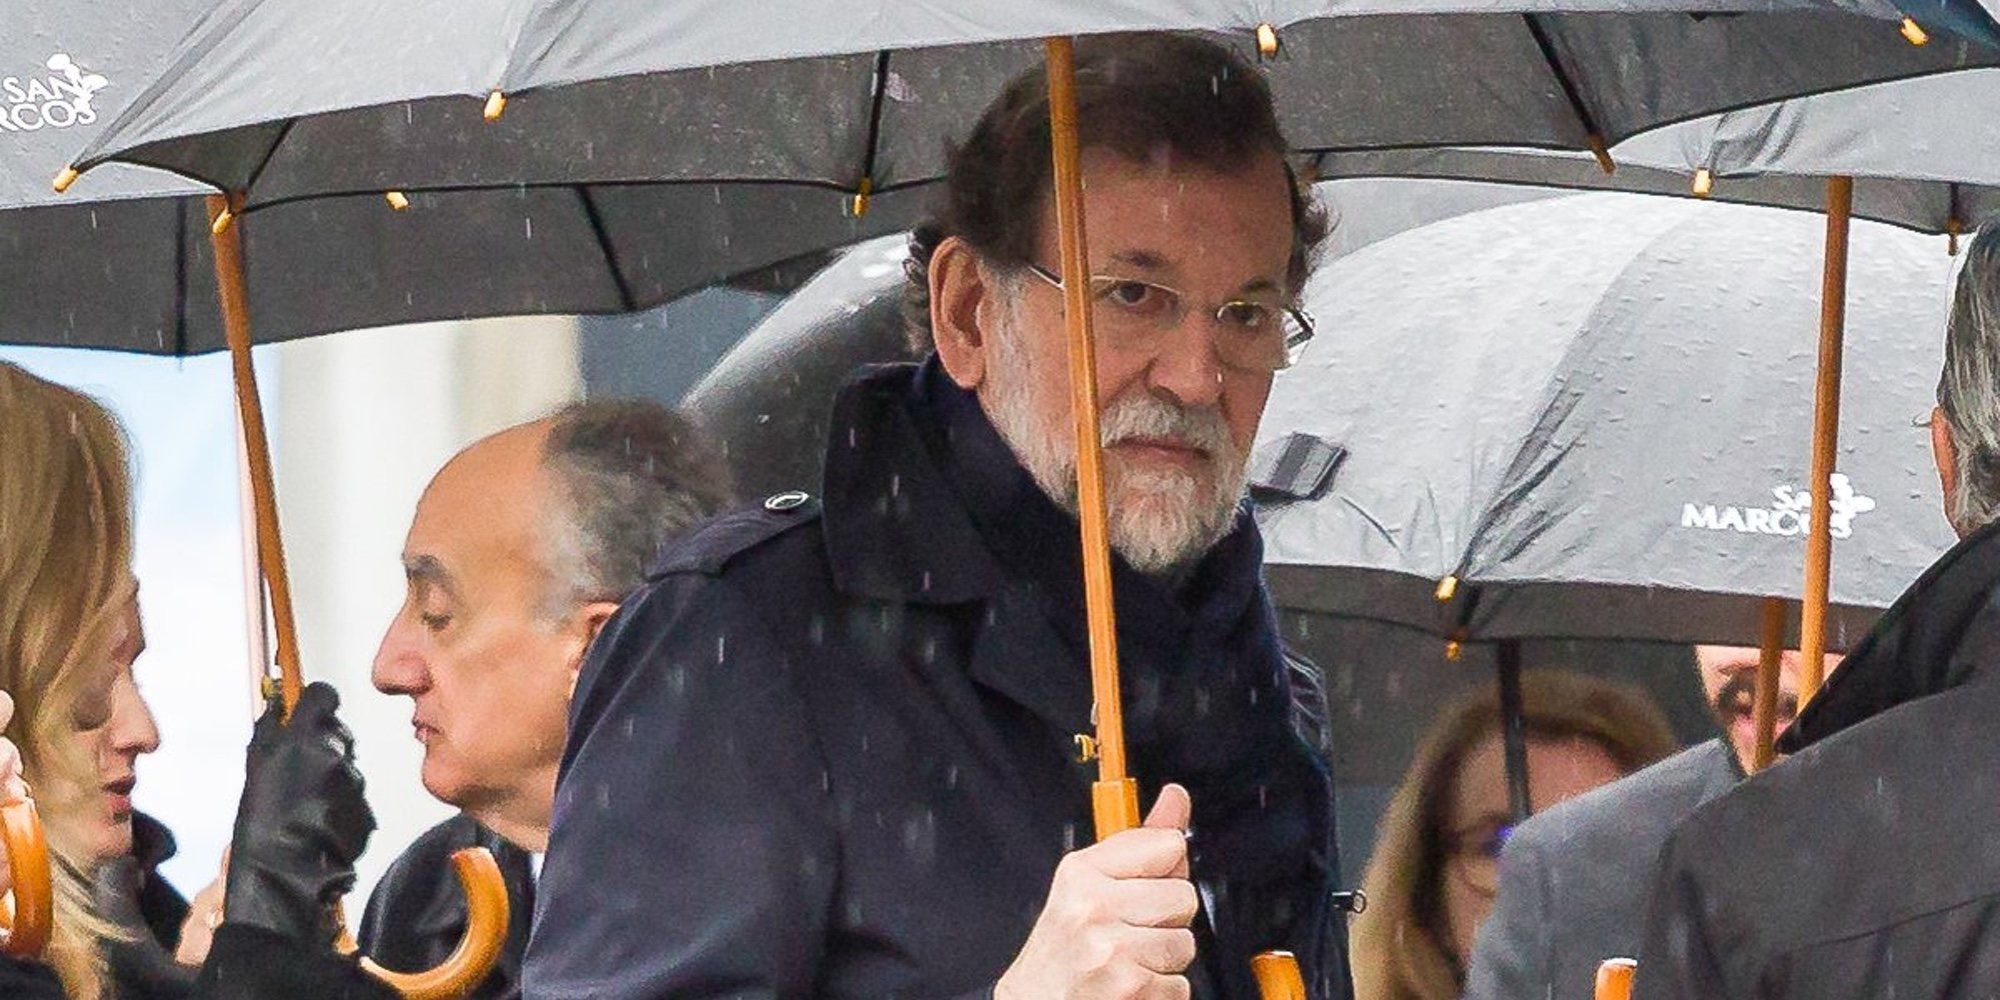 Mariano Rajoy, arropado por sus compañeros del PP en el entierro de su hermana Mercedes Rajoy